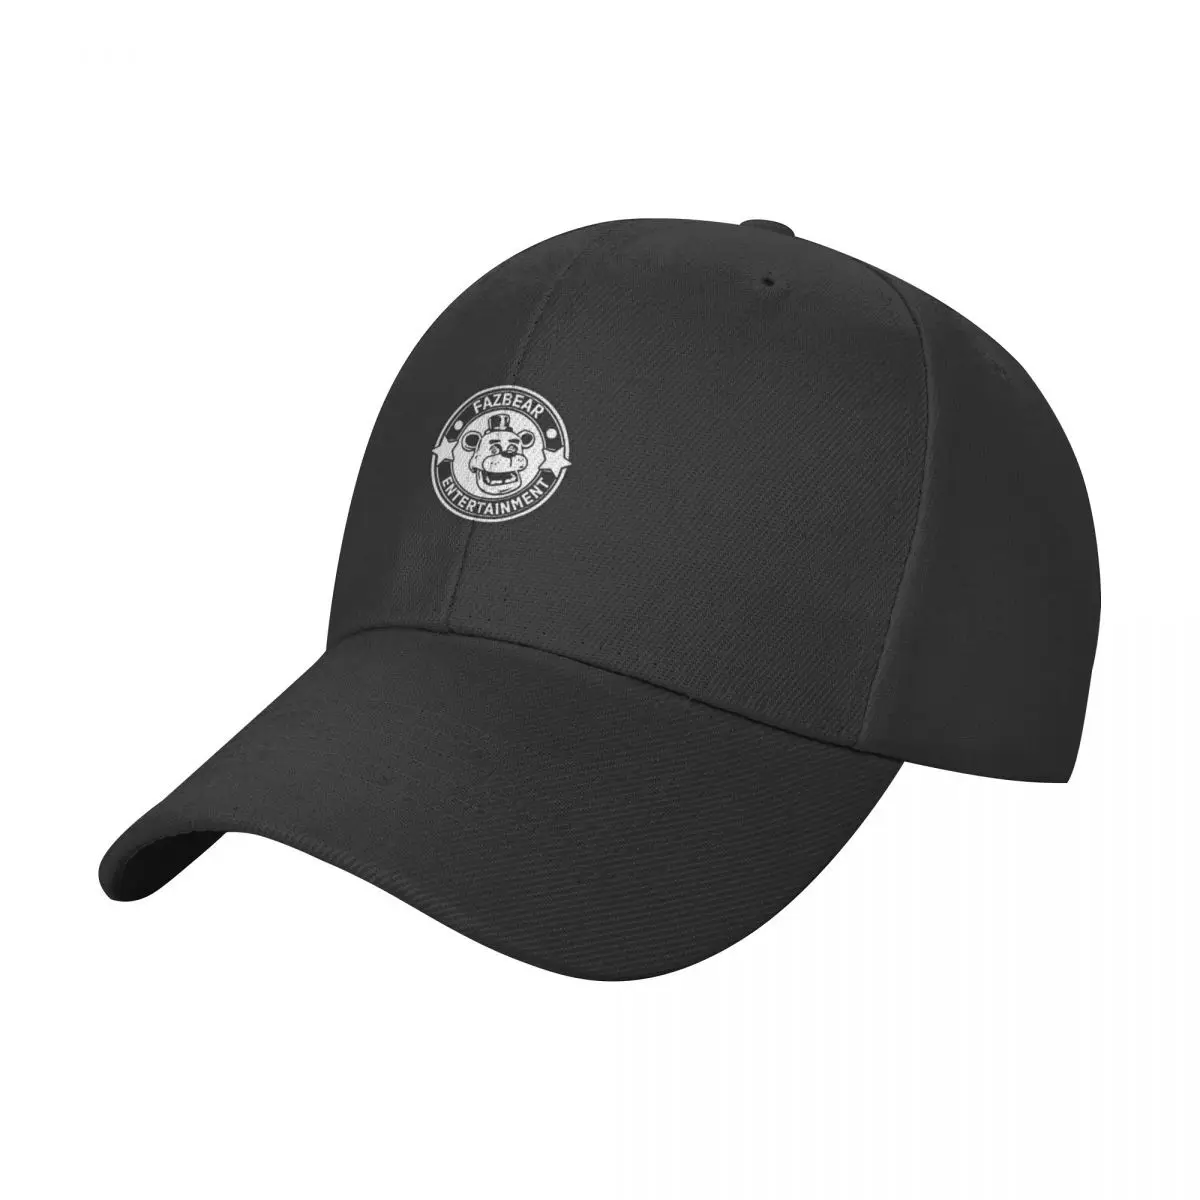 

Fazbear Entertainment Logo Baseball Cap Ball Cap boonie hats Beach Bag Trucker Hats For Men Women's